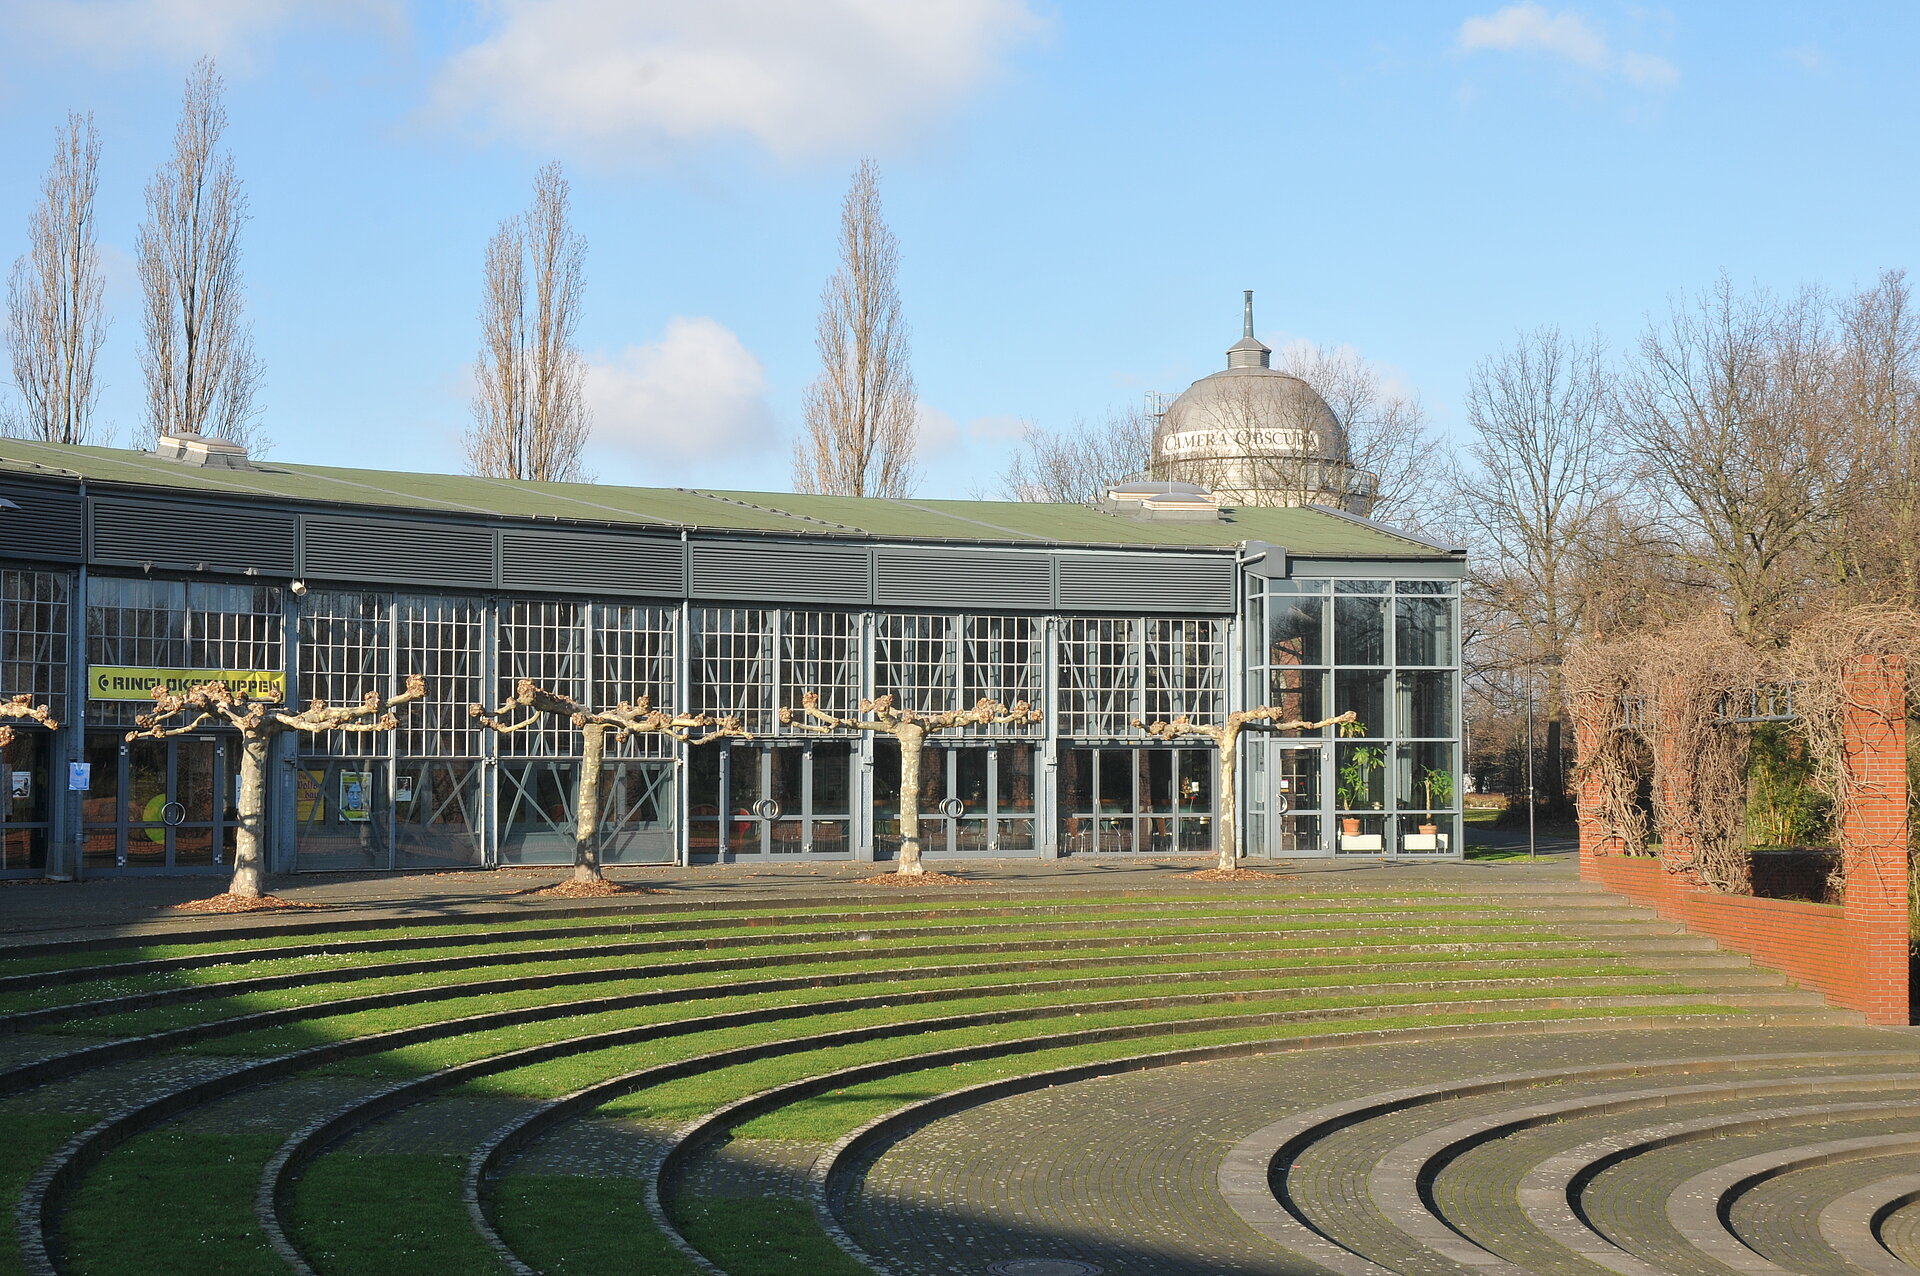 Der Ringlokschuppen in Mülheim ist heute eine Bühne für zeitgenössisches Theater, Performance und Tanz. 